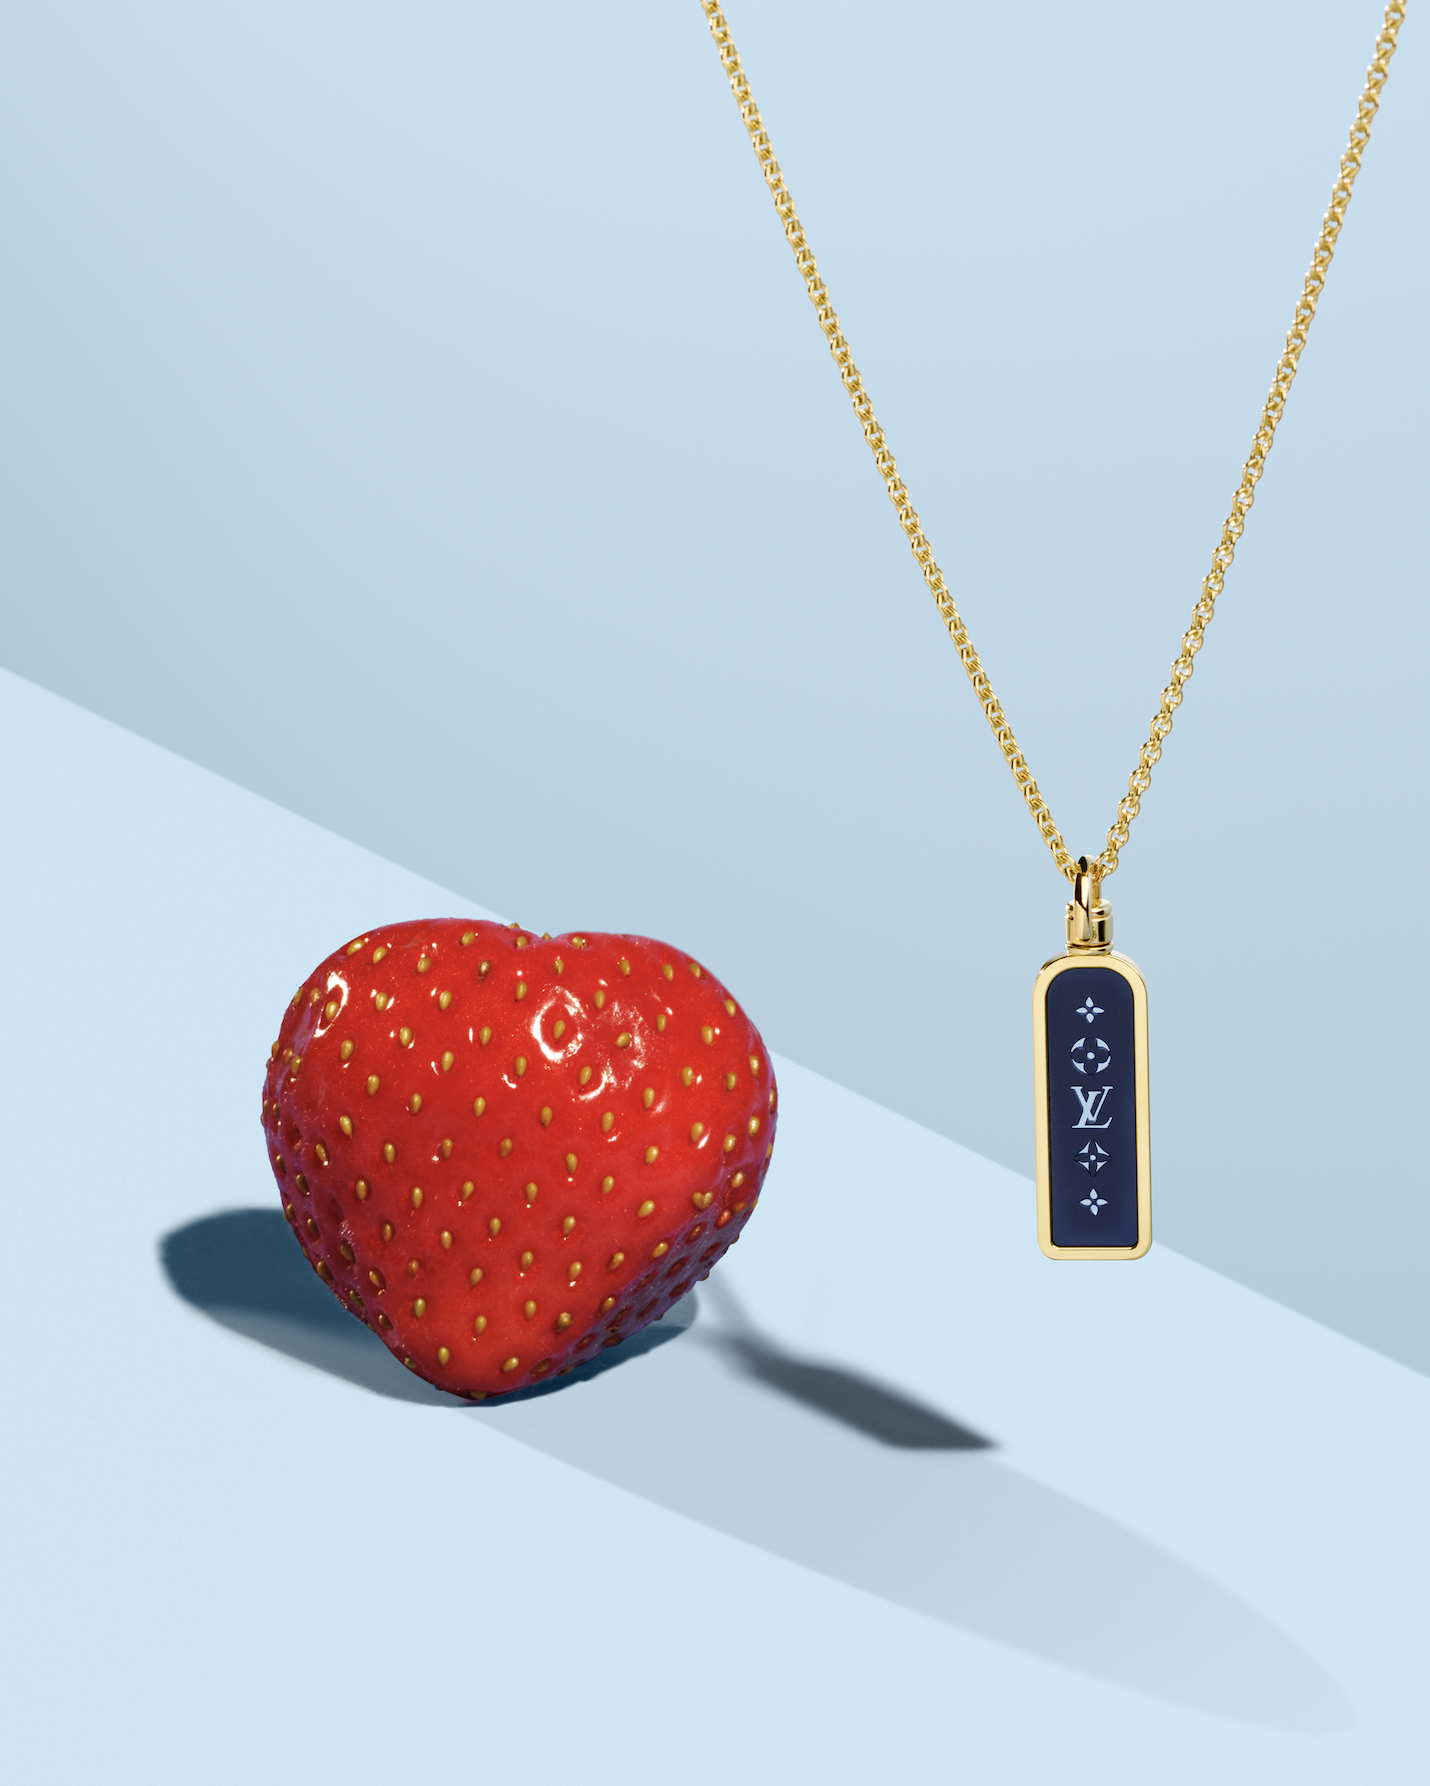 Louis Vuitton - guía de regalos para San Valentín - Valentines